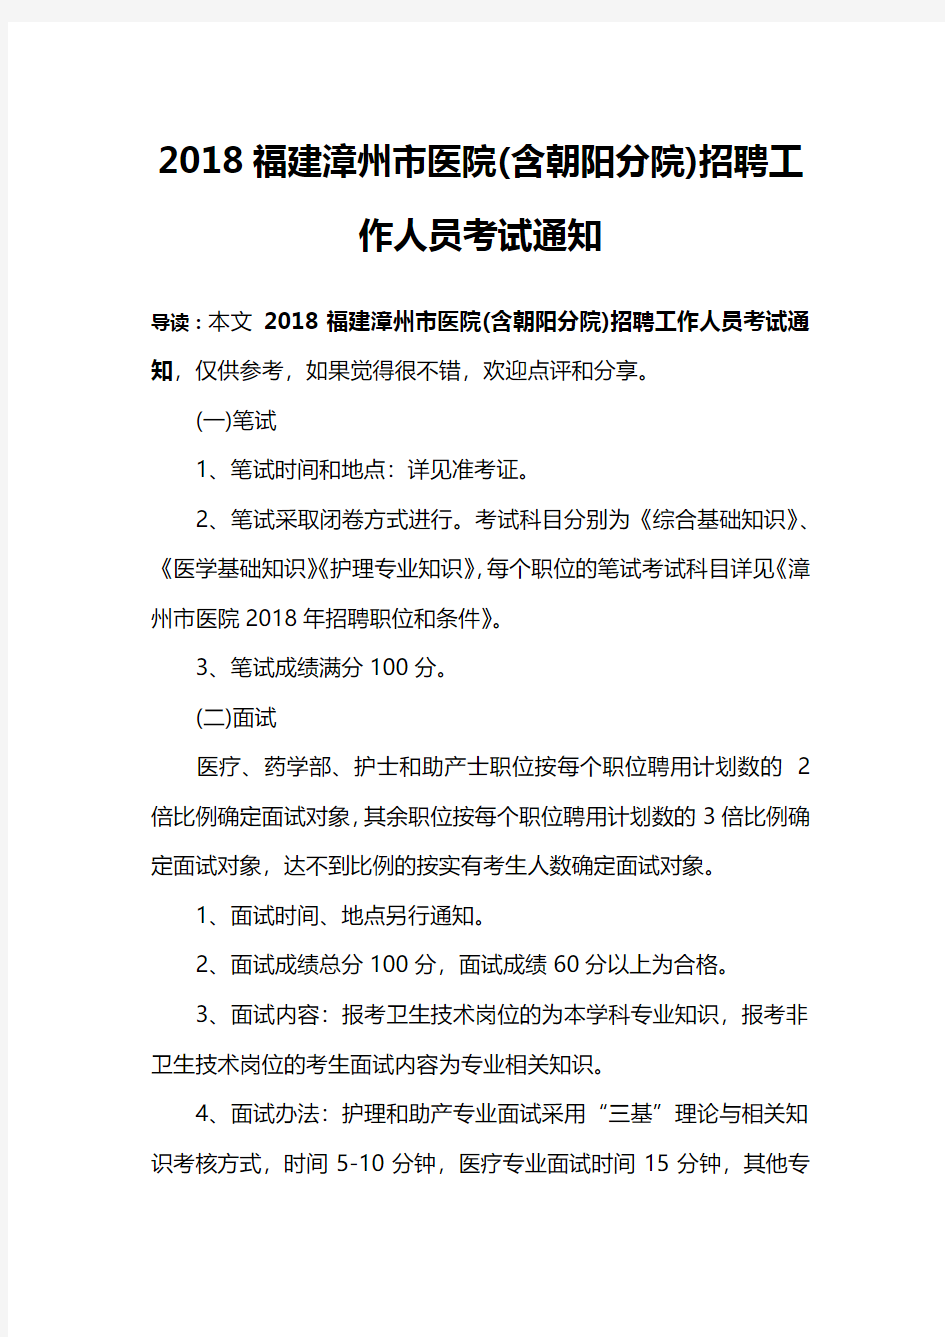 2018福建漳州市医院(含朝阳分院)招聘工作人员考试通知